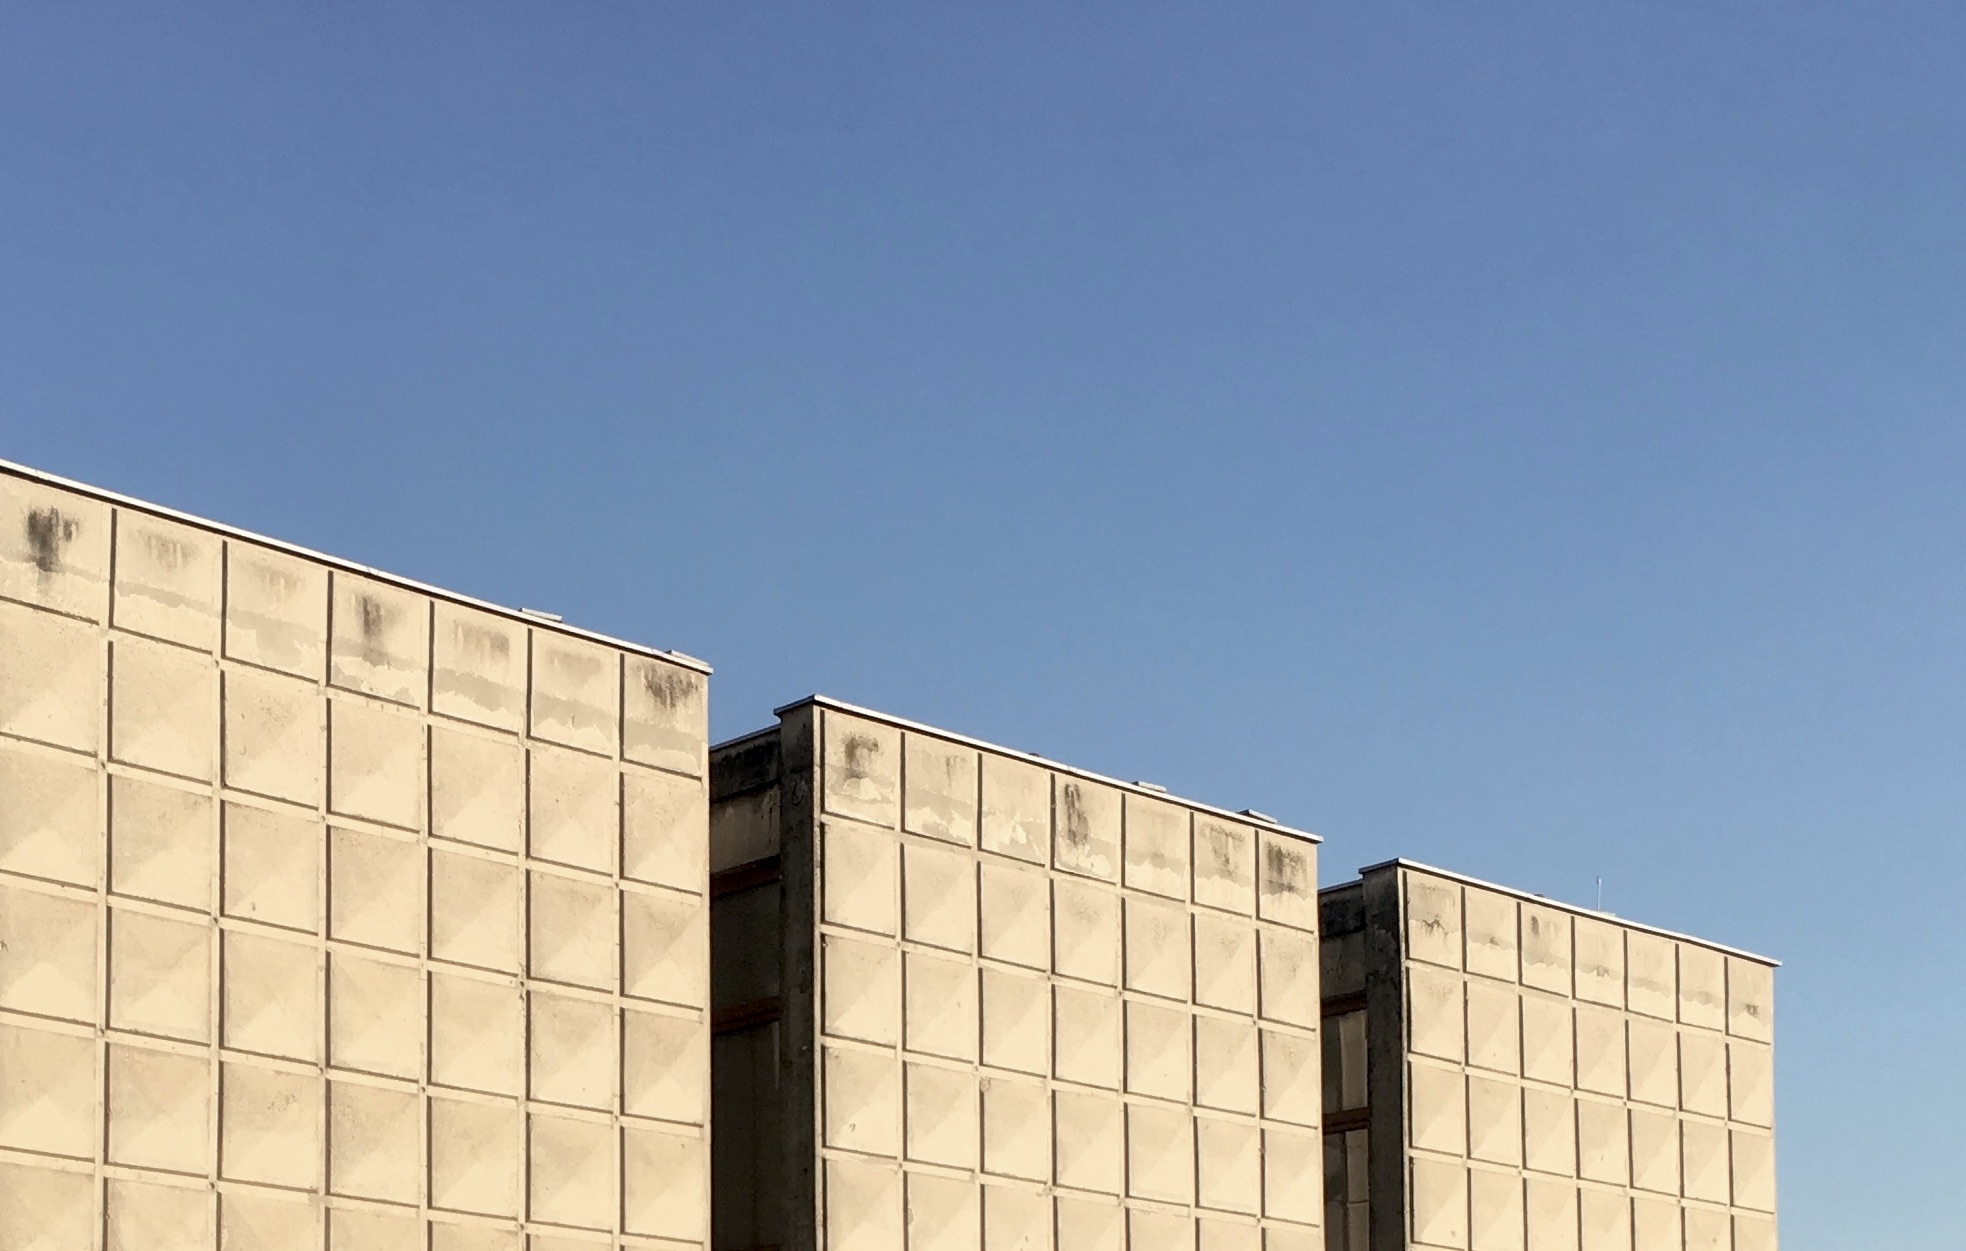 Galerija "Vjekoslav Karas". Pojam „brutalizam“ u arhitekturi veže se uglavnom za djela arhitekata u periodu od 1950-1975. godine koji su isticali važnost iskrenog i autentičnog korištenja materijala na način da se oni koriste u izvornom obliku bez naknadnih obloga ili obrada koje bi sakrile pravu prirodu i ljepotu materijala. Najčešće se pojam brutalizma veže za objekte izvedene u sirovom, natur-betonu (beton-brut), no često je i oblikovanje u opeci, kamenu, drvu, čeliku bez naknadnih obrada materijala Foto: Luka Krmpotić